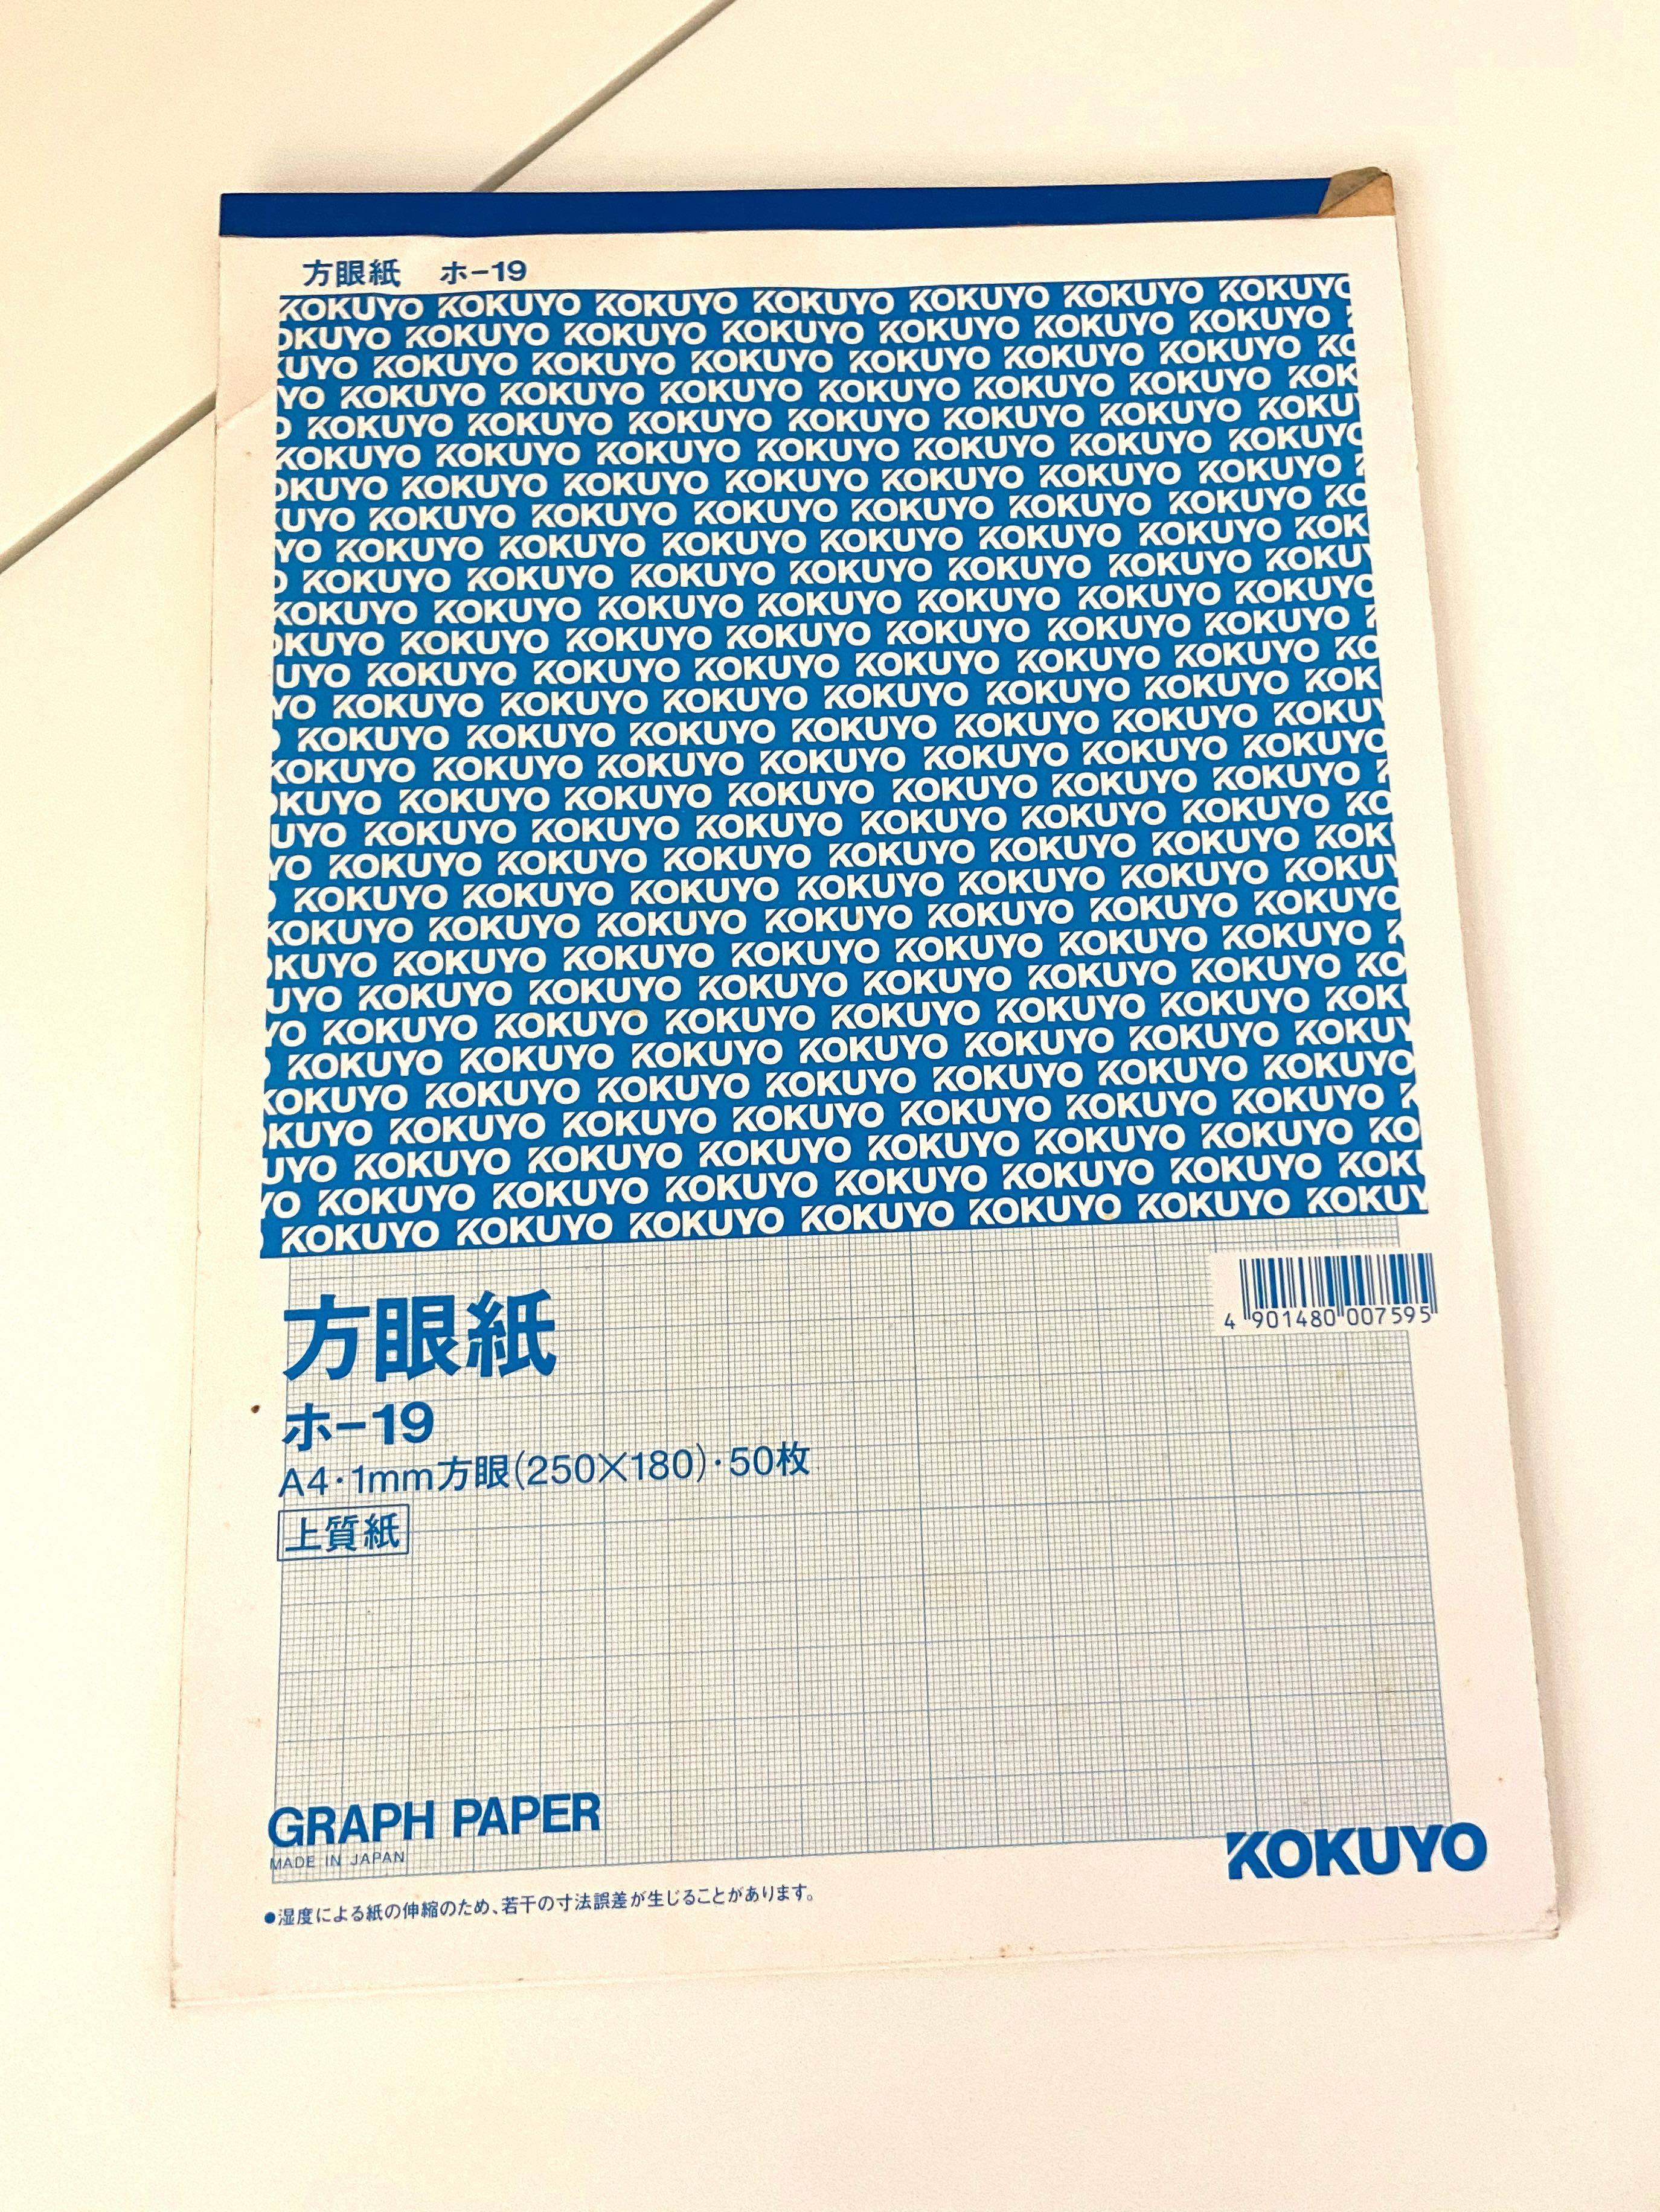 Kokuyo Graph Paper 方眼紙 興趣及遊戲 手作 自家設計 文具 Carousell